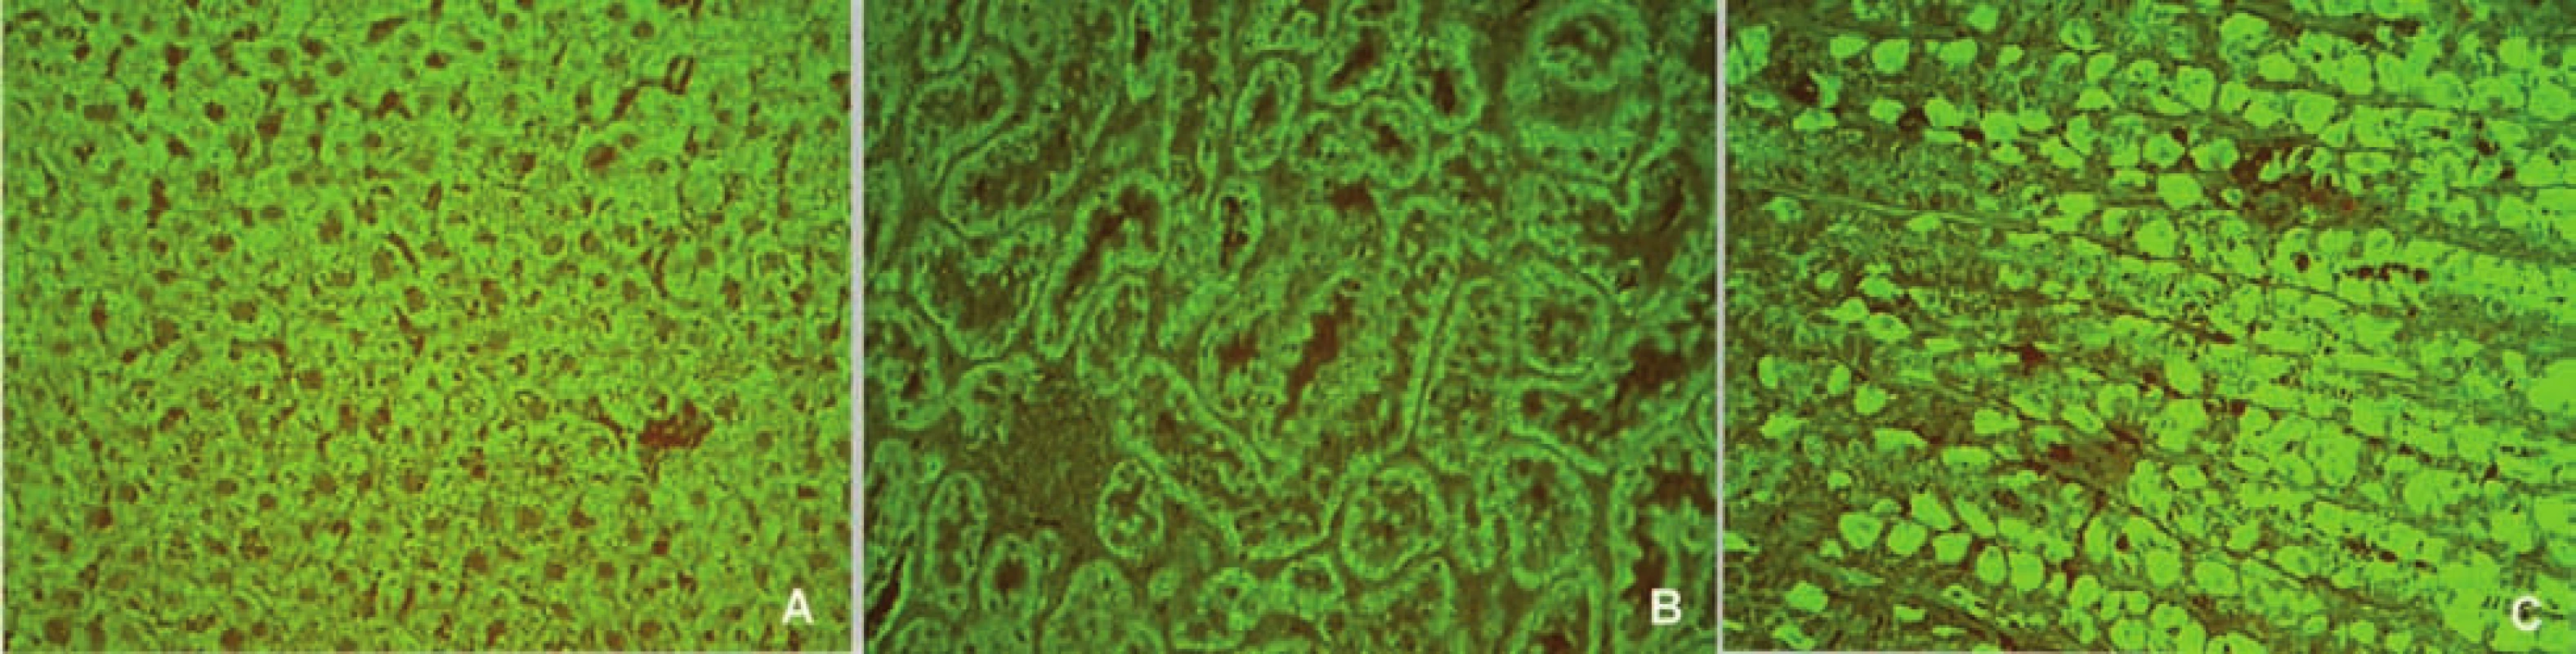 Imunofluorescenční obraz antimitochondriálních protilátek (substrát – krysí játra, ledvina a žaludek, A – jaterní buňky, B – proximální a distální tubuly, C – parietální buňky žaludeční sliznice).
Fig. 6. Immunofluorescent image of anti-mitochondrial antibodies (substrate – rat liver, kidney and stomach, A – liver cells, B – proximal and distal tubules, C – parietal cells of stomach mucosa).